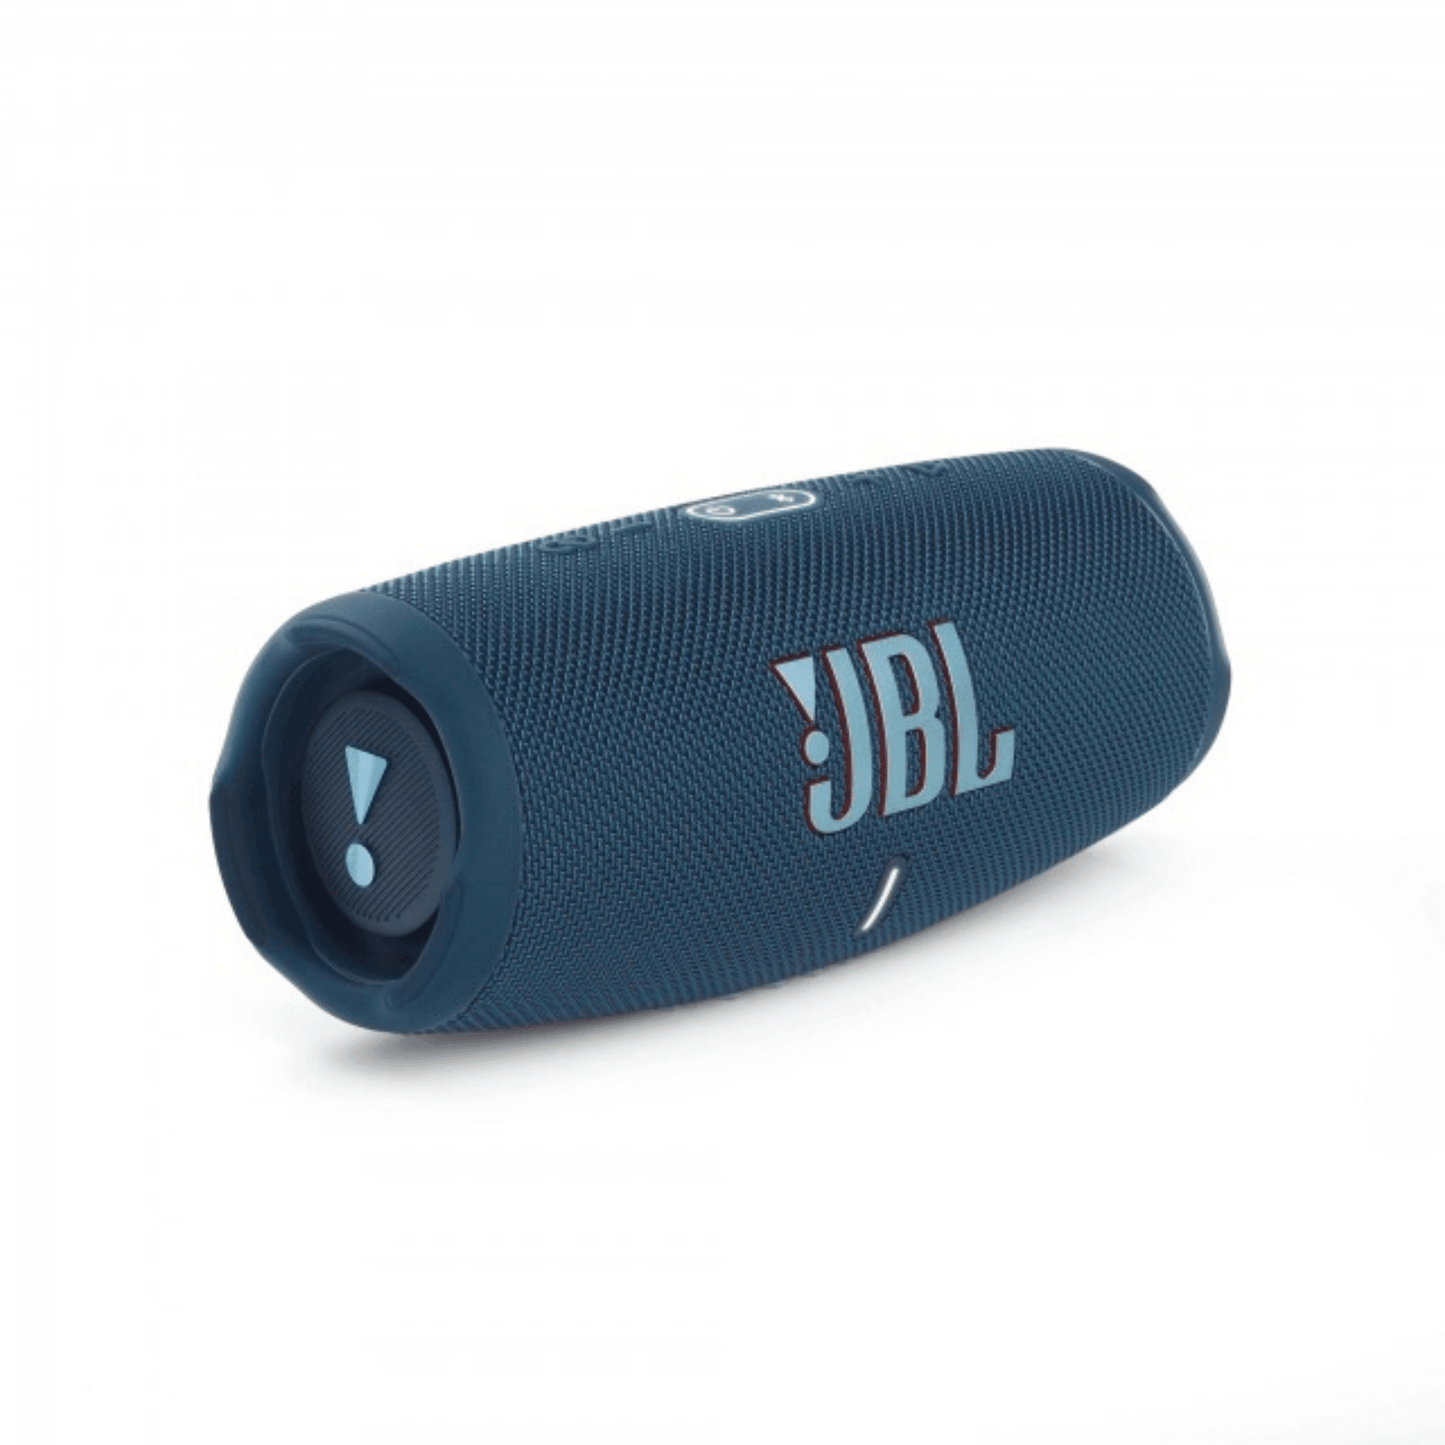 JBL - Charge 5 Bluetooth Lautsprecher - Blau - Pazzar.ch